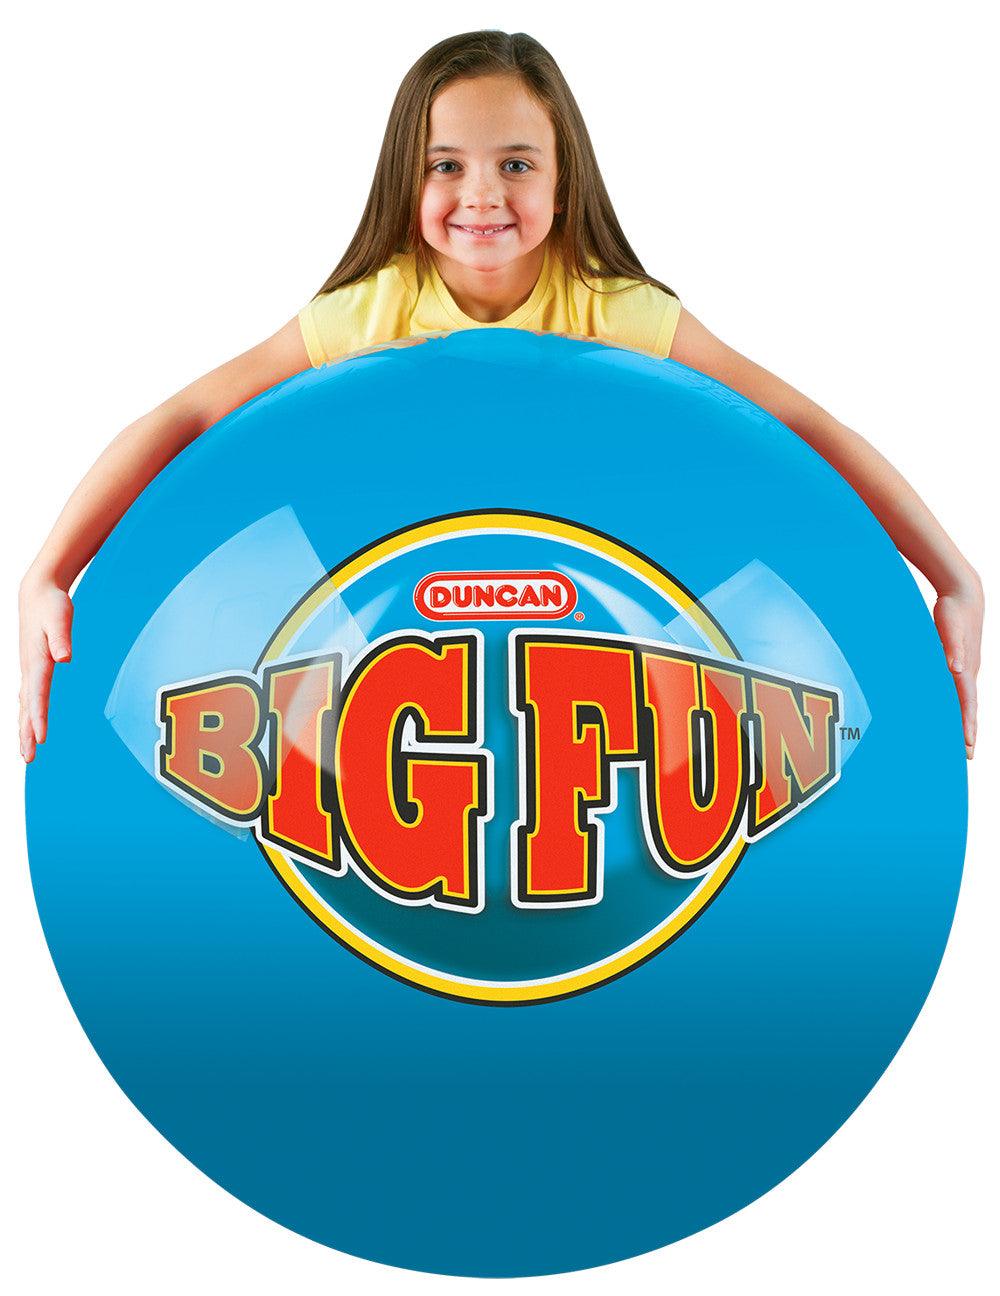 Duncan Mega Bounce XL Big Fun Ball (Assorted Colours) Duncan Titan Pop Culture